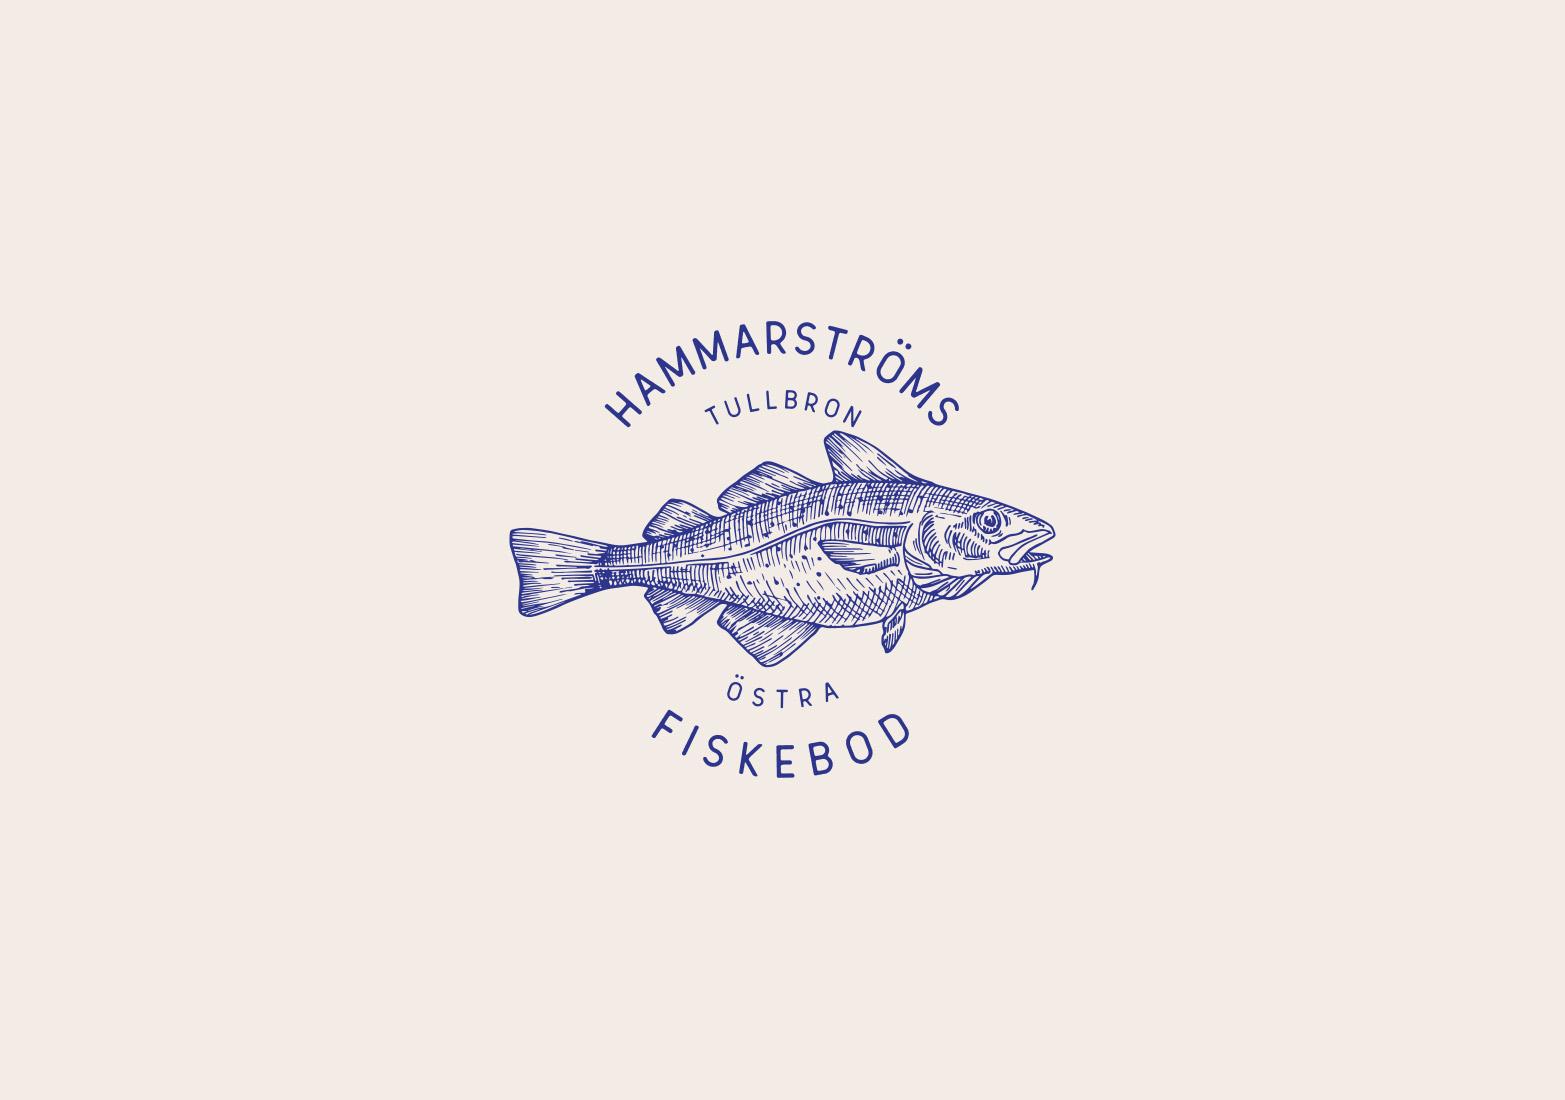 Hammarström’s Fiskebod